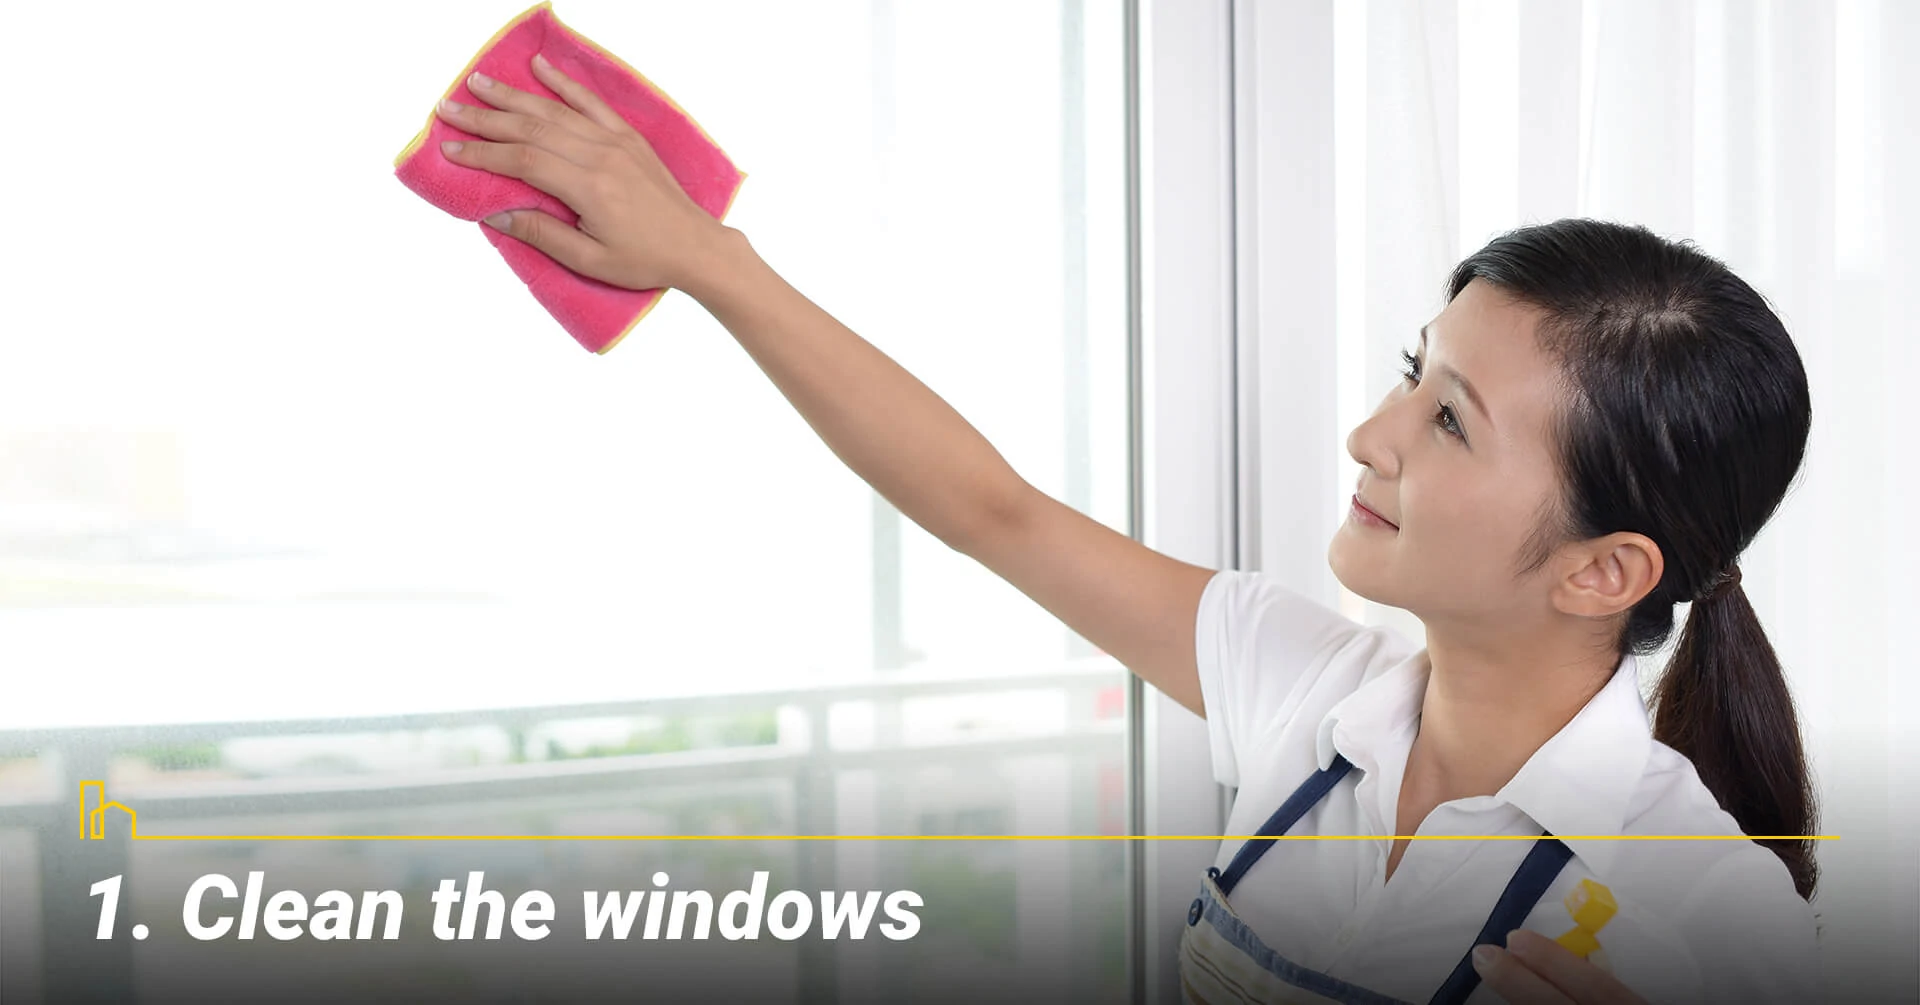 Clean the windows, keep windows clean